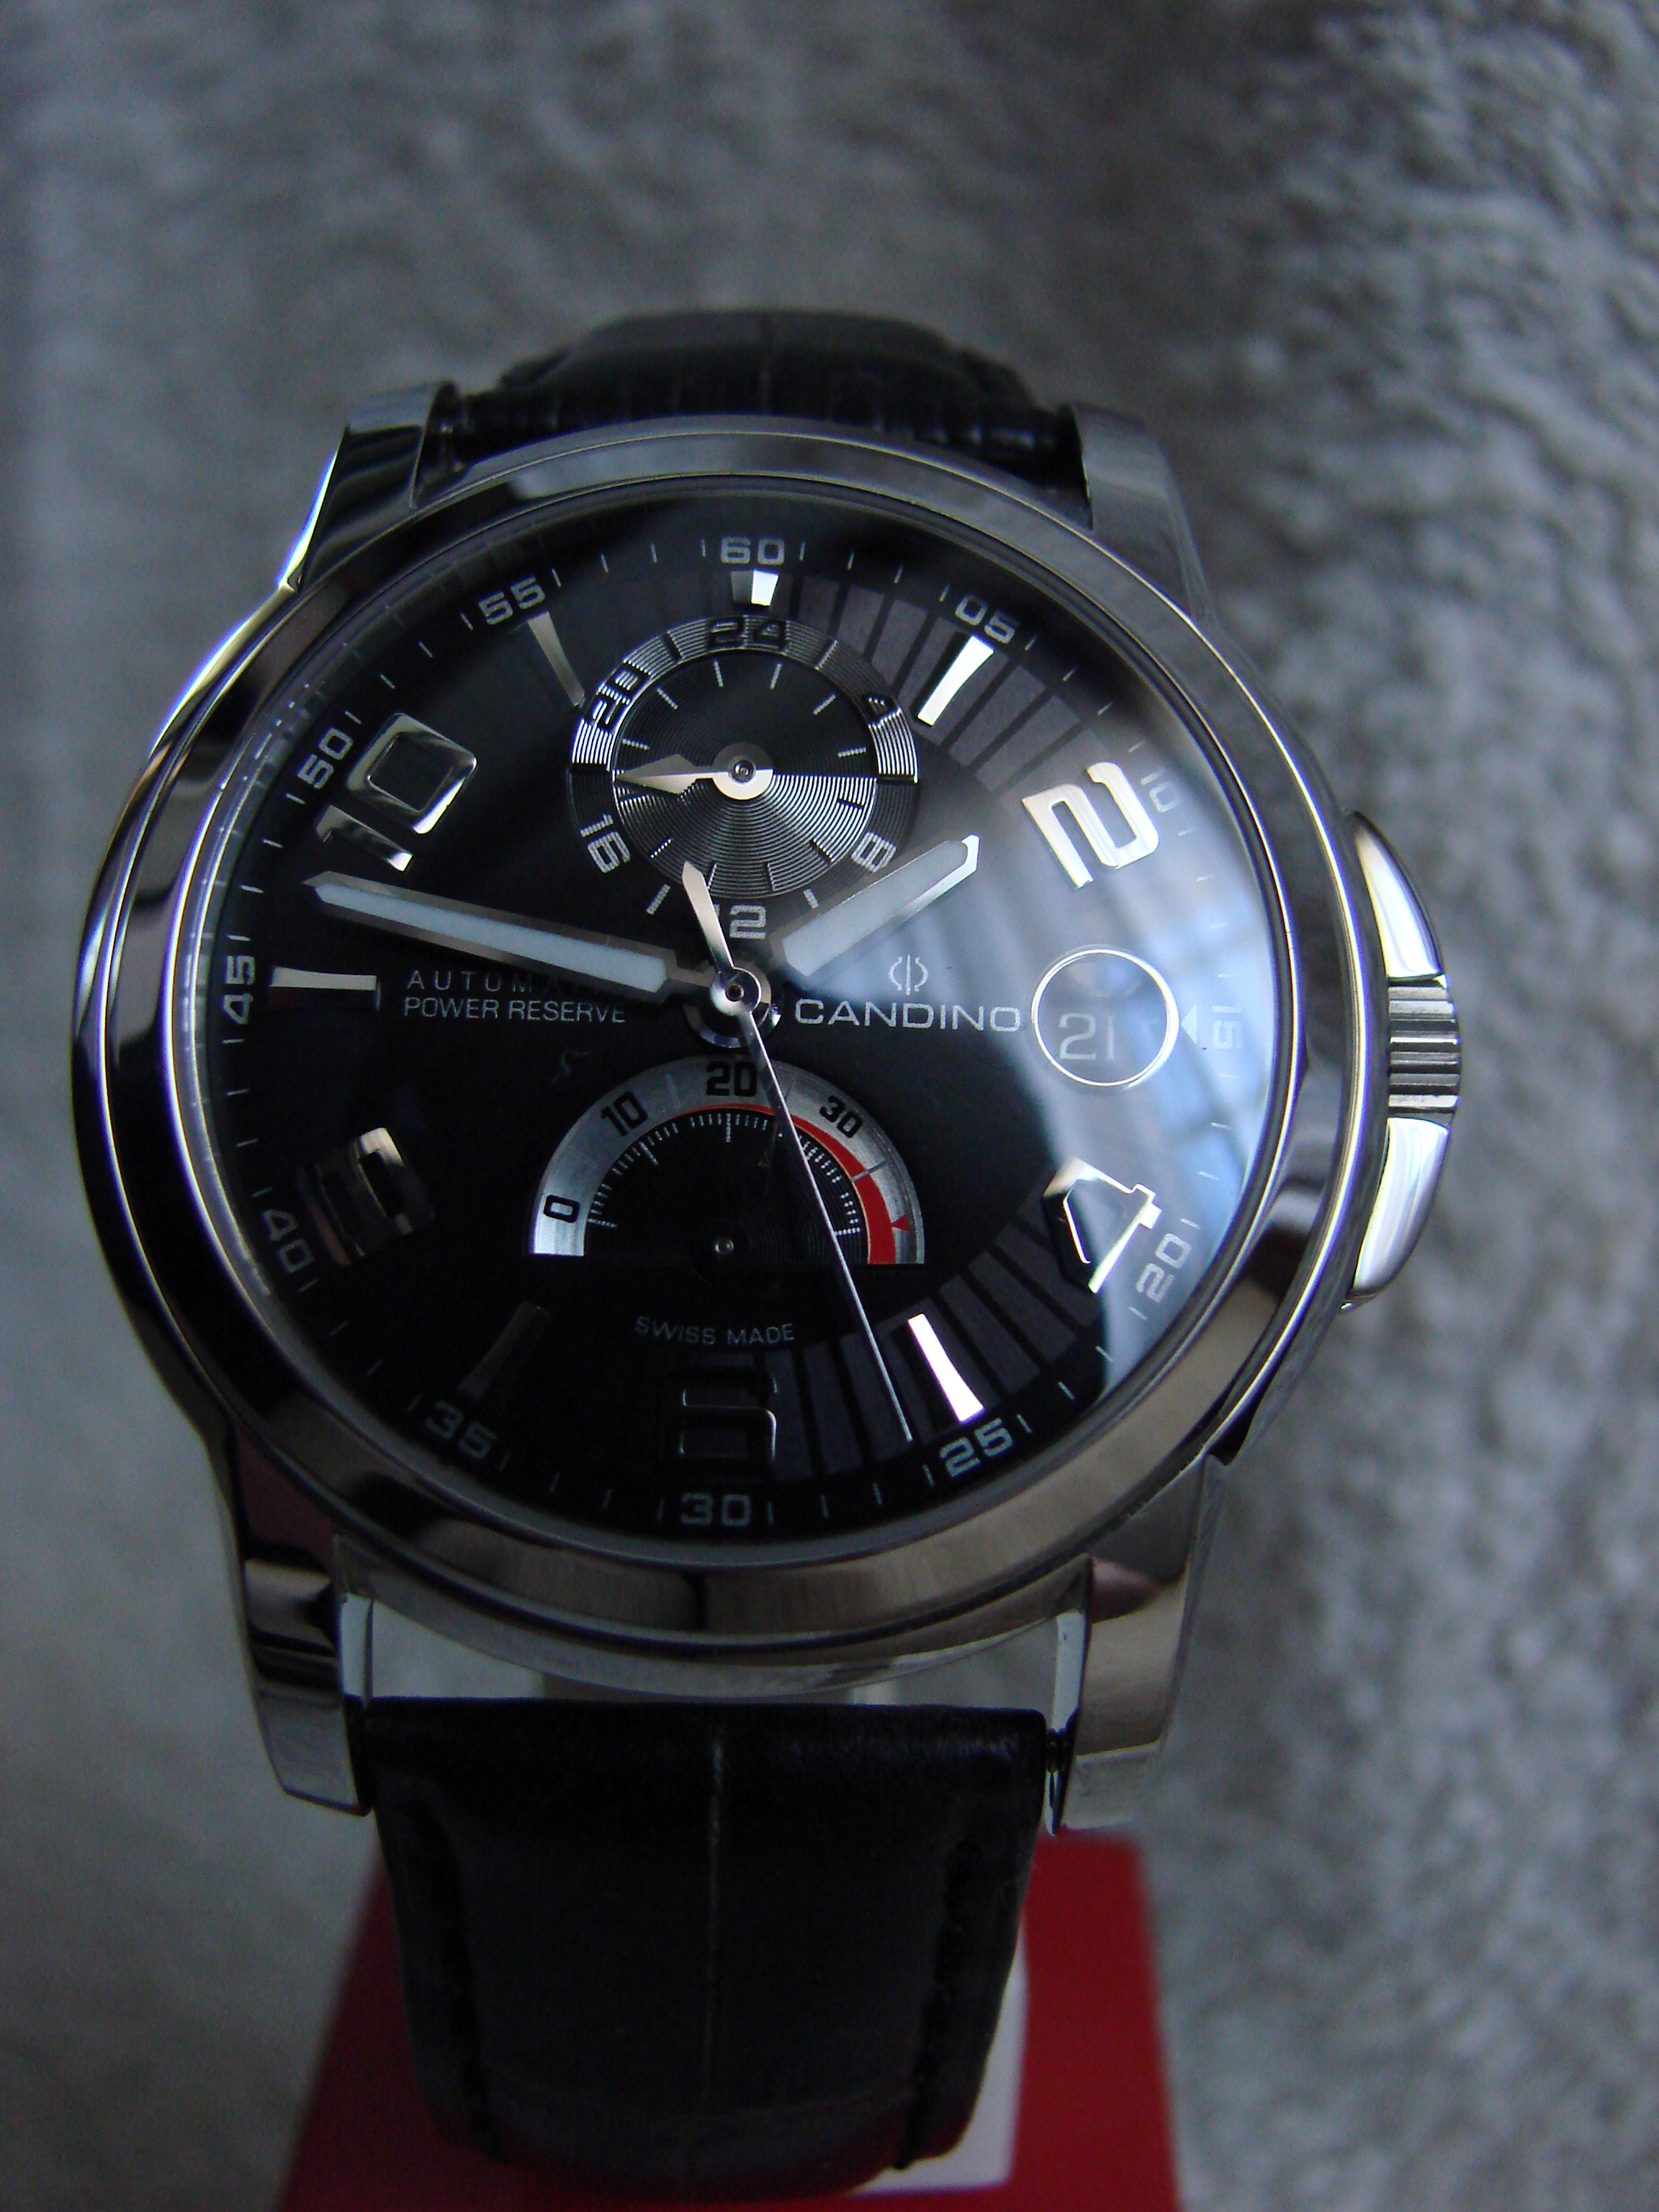 Afwezigheid binnenkort bedenken Candino 316 L UC4314/C automaat met Power Reserve Indicator - Horlogemarkt  (archief) - Horlogeforum.nl - het forum voor liefhebbers van horloges